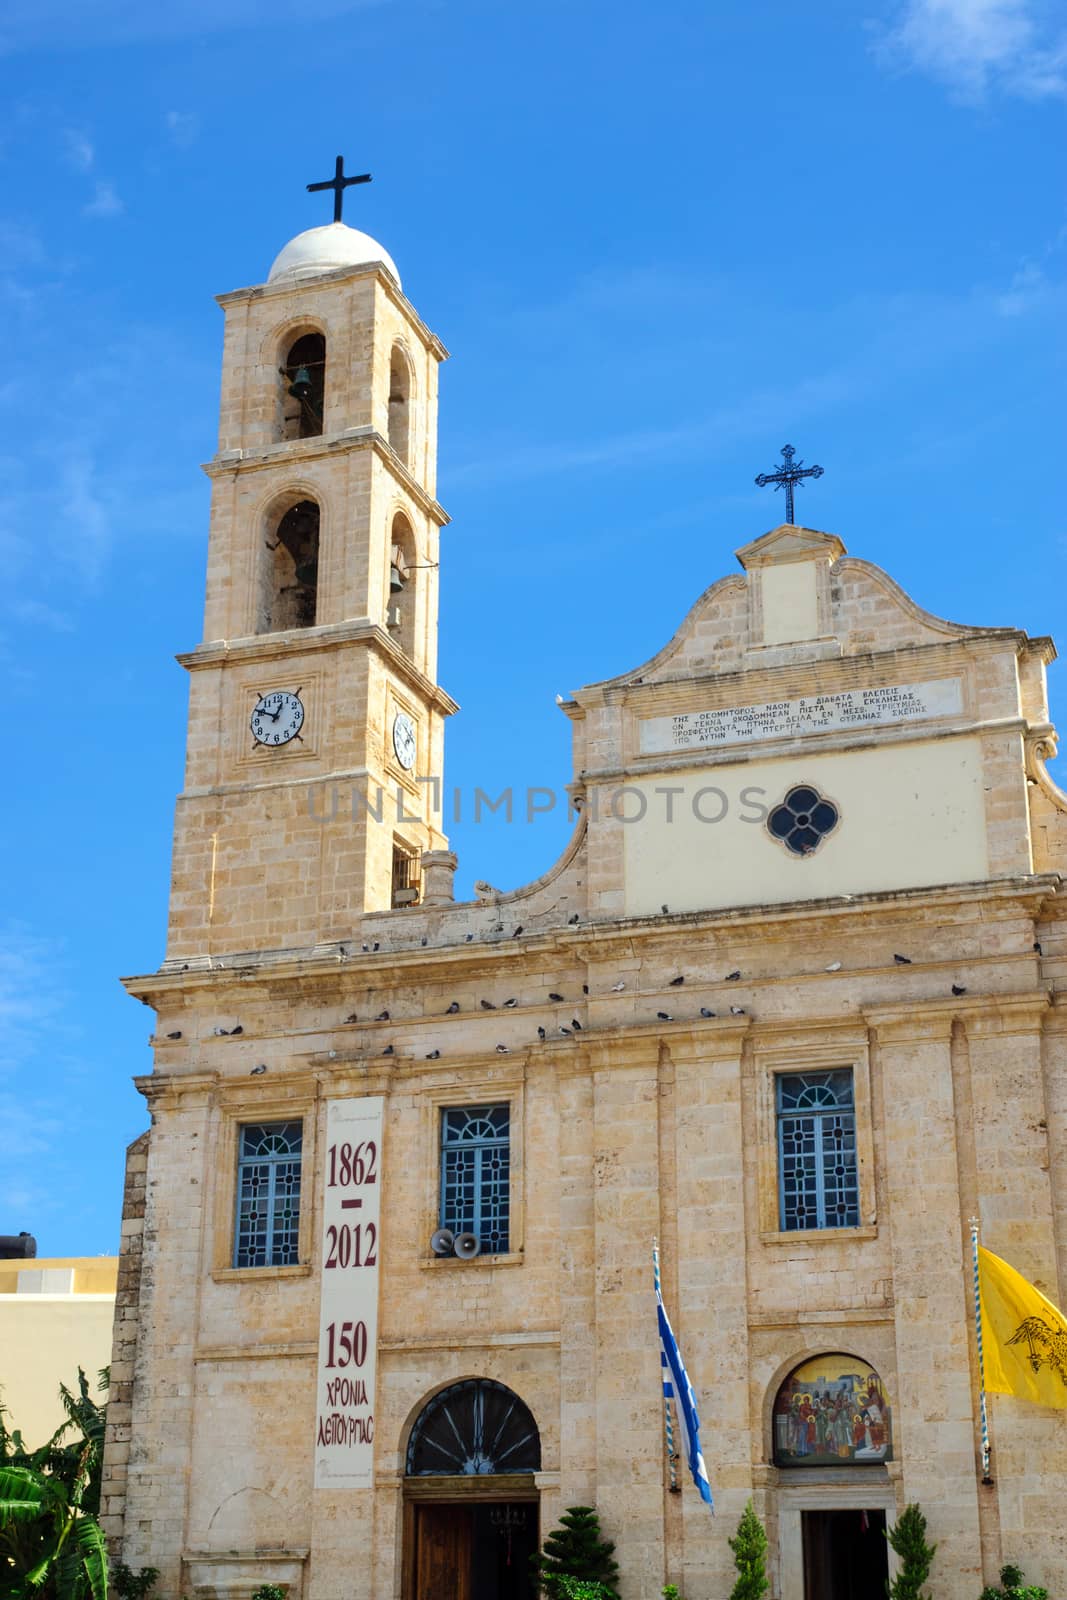 Church on the main square in Chania, Crete